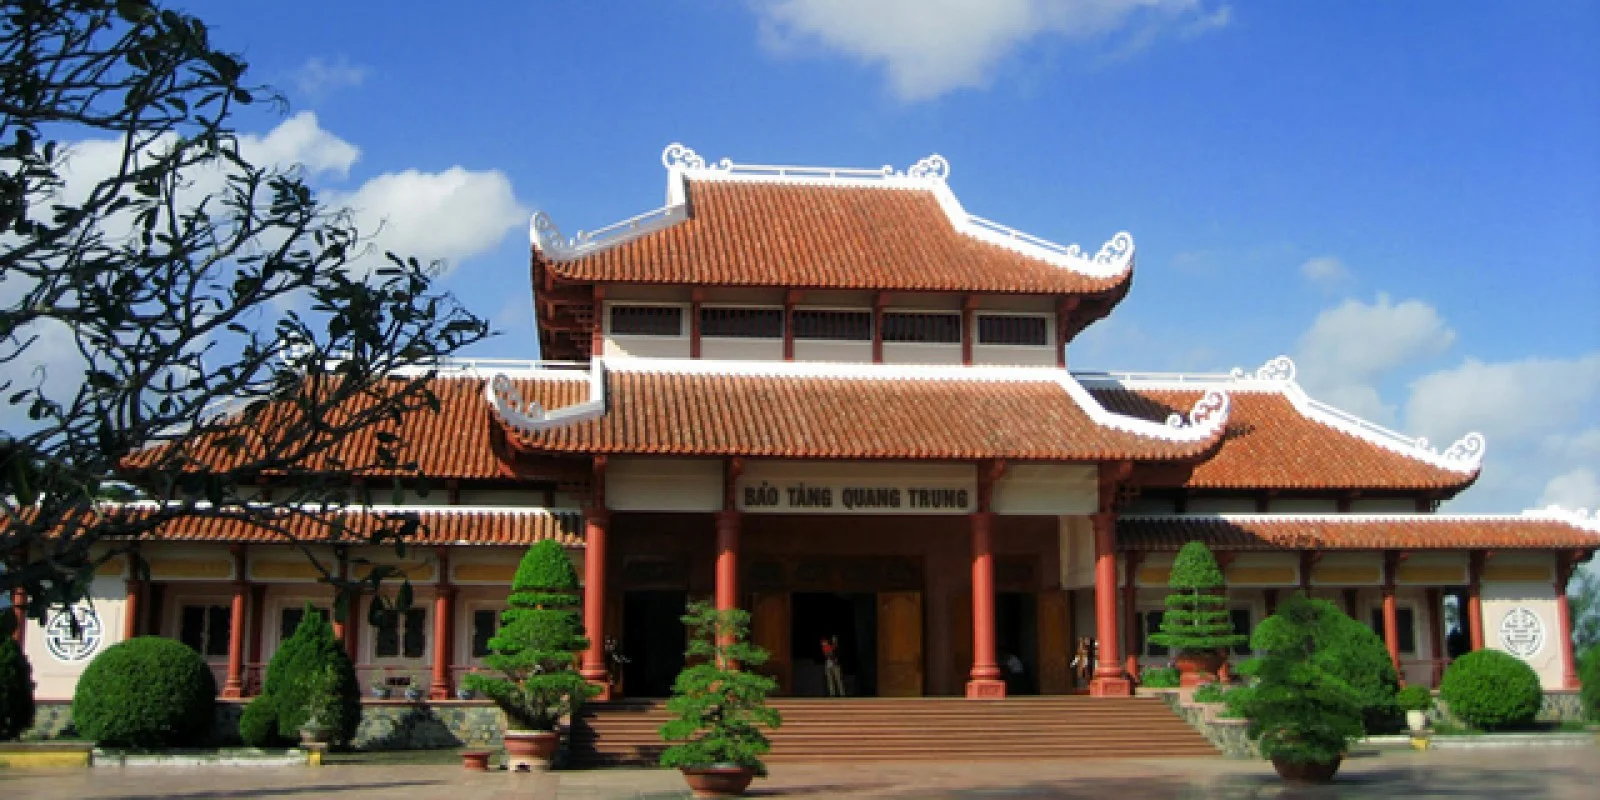 Tour Văn Hóa - Lịch Sử Bảo Tàng Quang Trung 1 Ngày